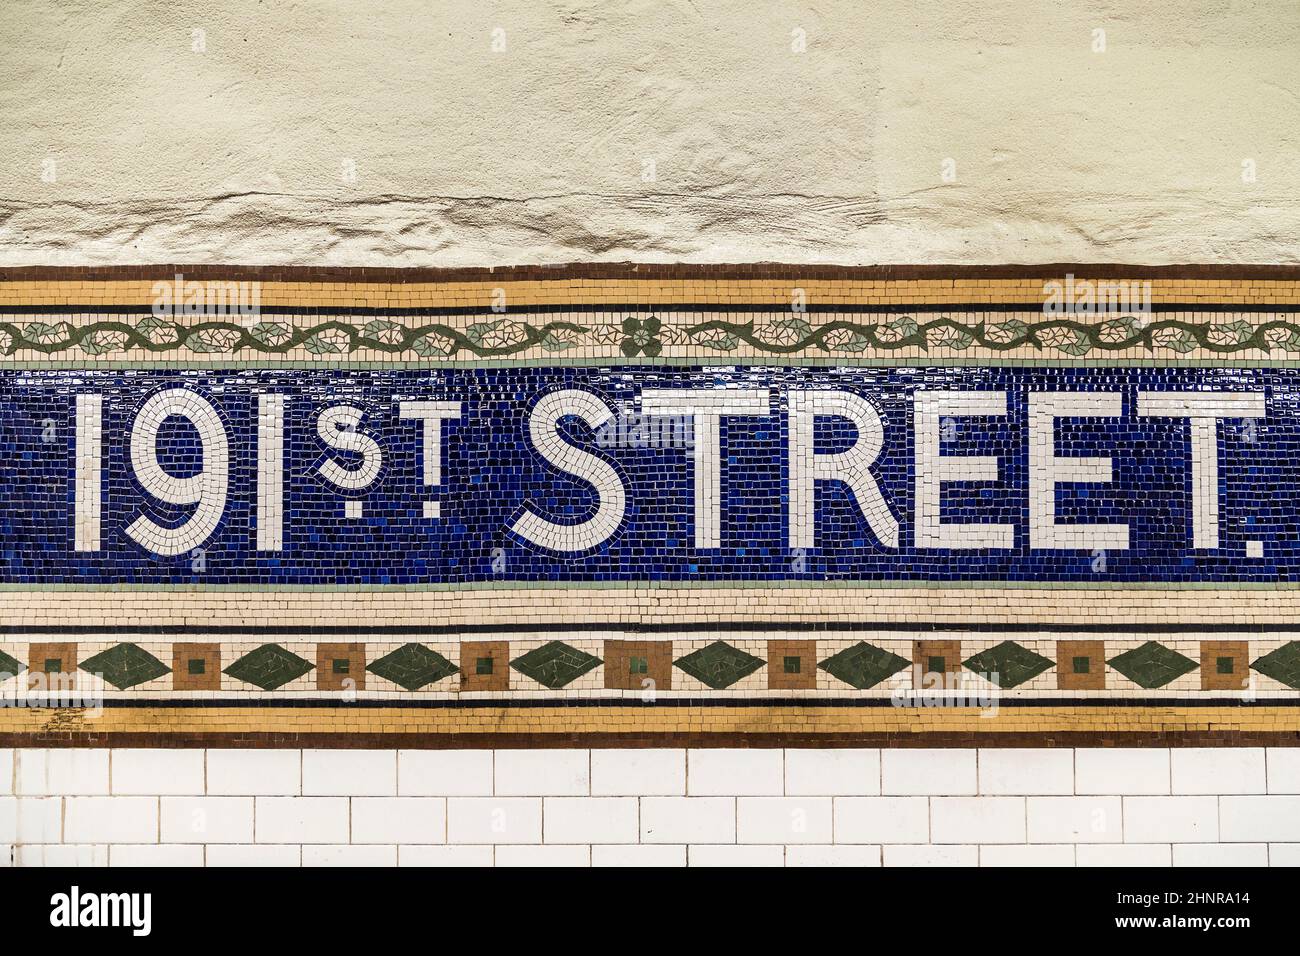 Vecchio segno vintage 191th Street stazione della metropolitana nel Bronx Foto Stock